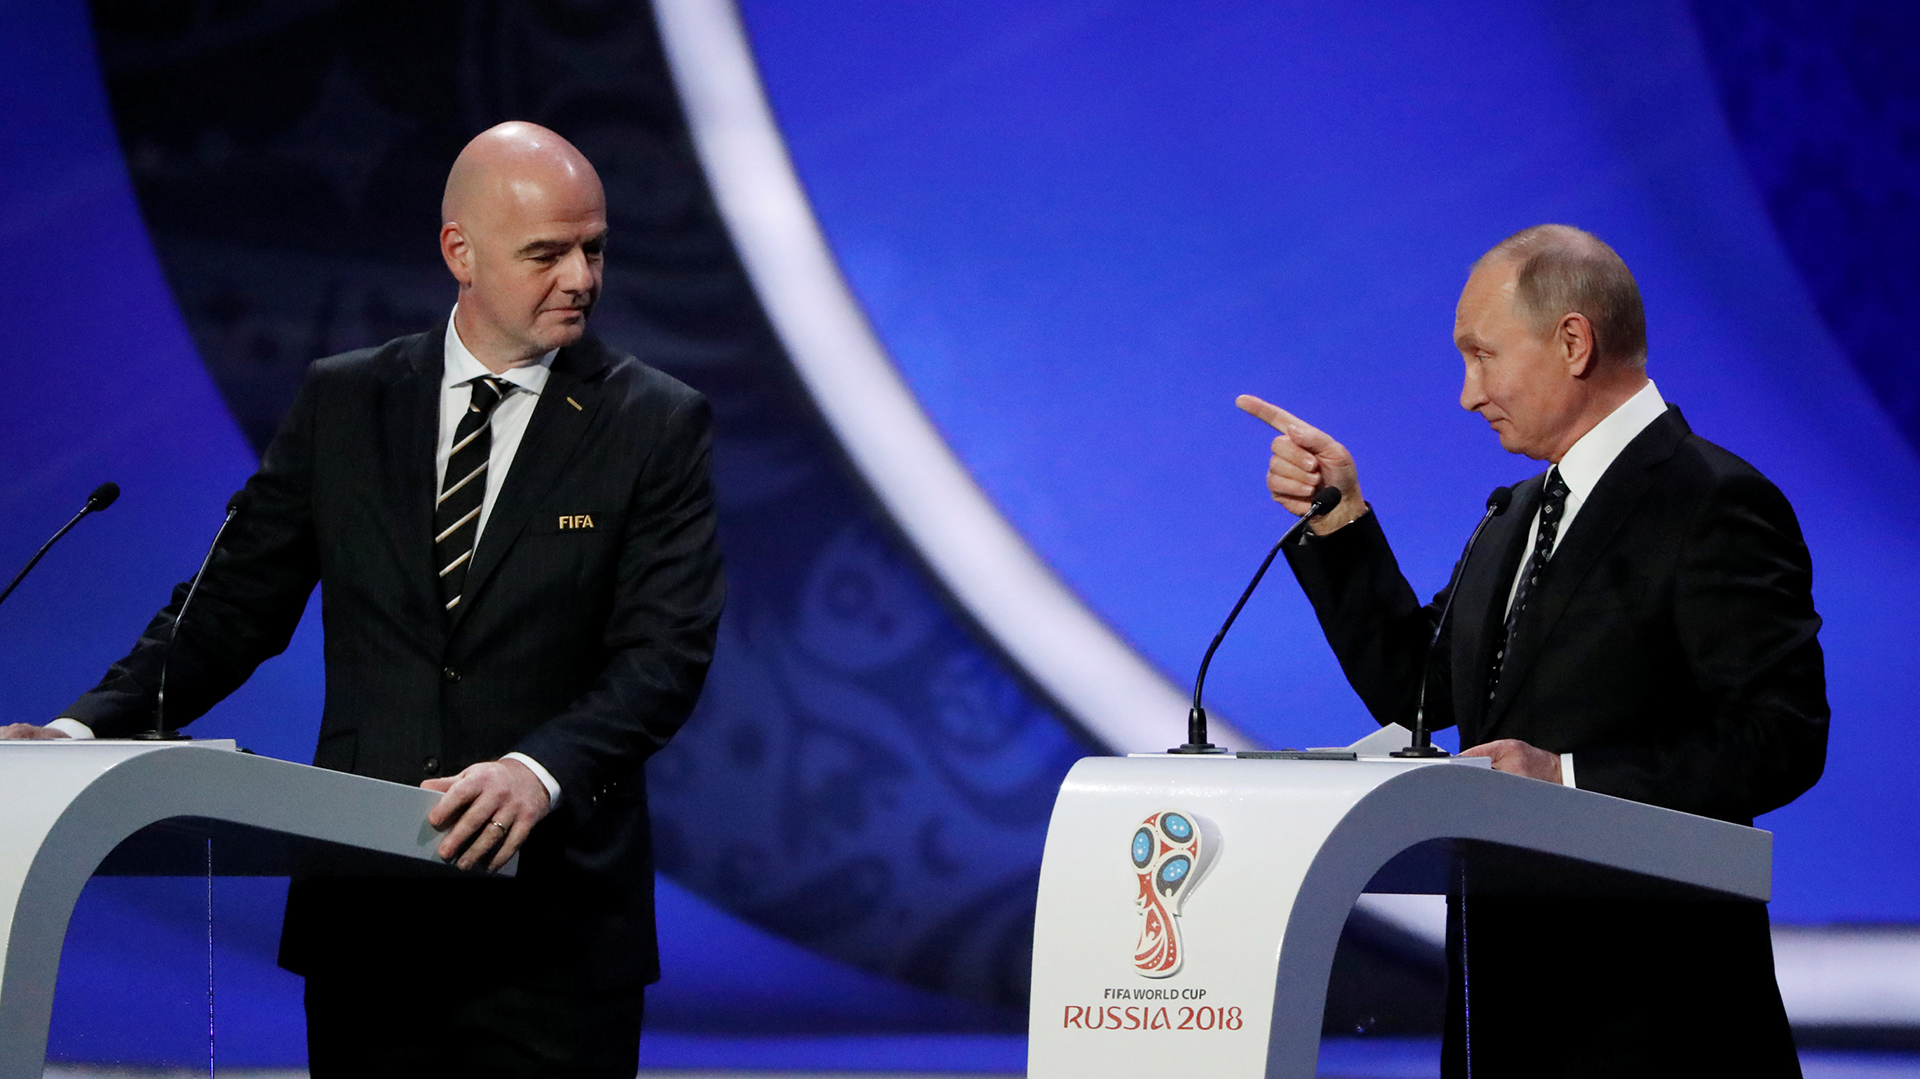 Rusia organizó en 2018 el Mundial de fútbol, pese a las denuncias de sobornos (Reuters)